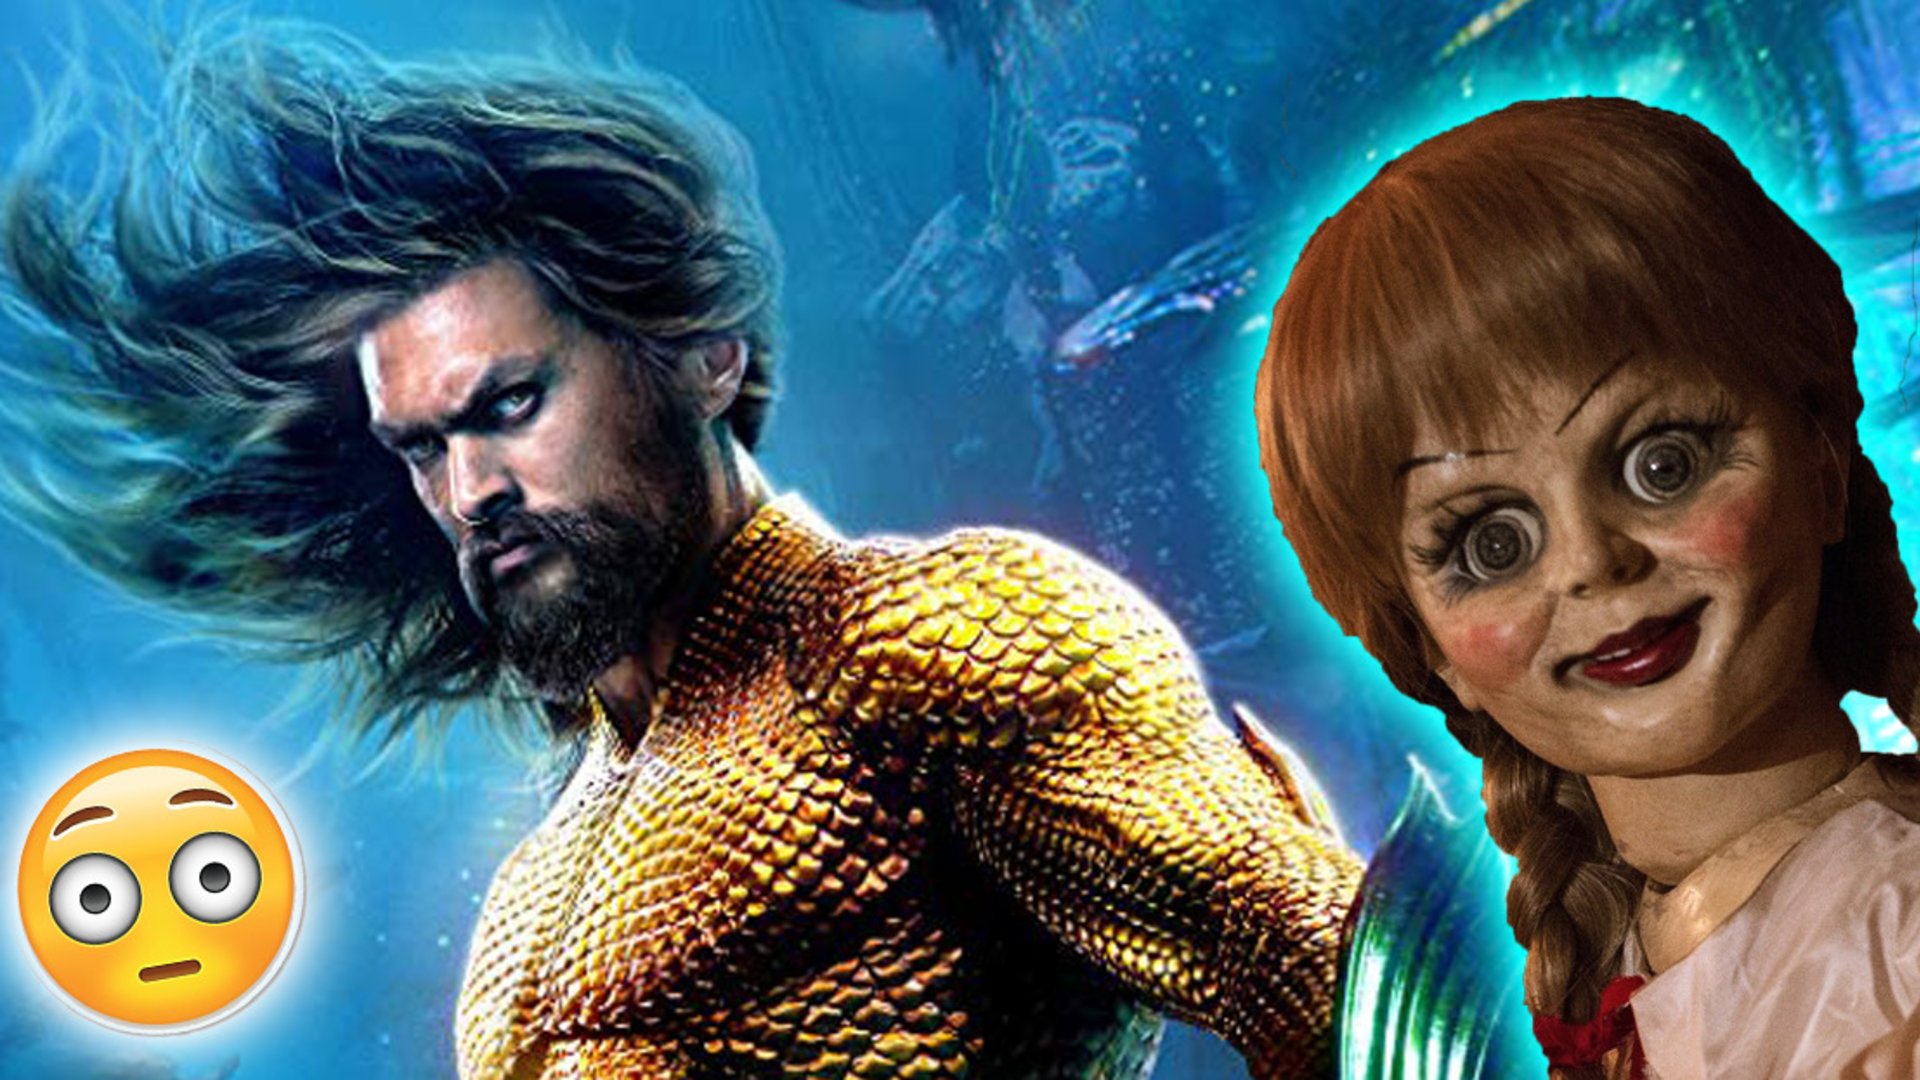 Kein Scherz Horror Puppe Annabelle Taucht Tatsachlich In Aquaman Auf Kino De